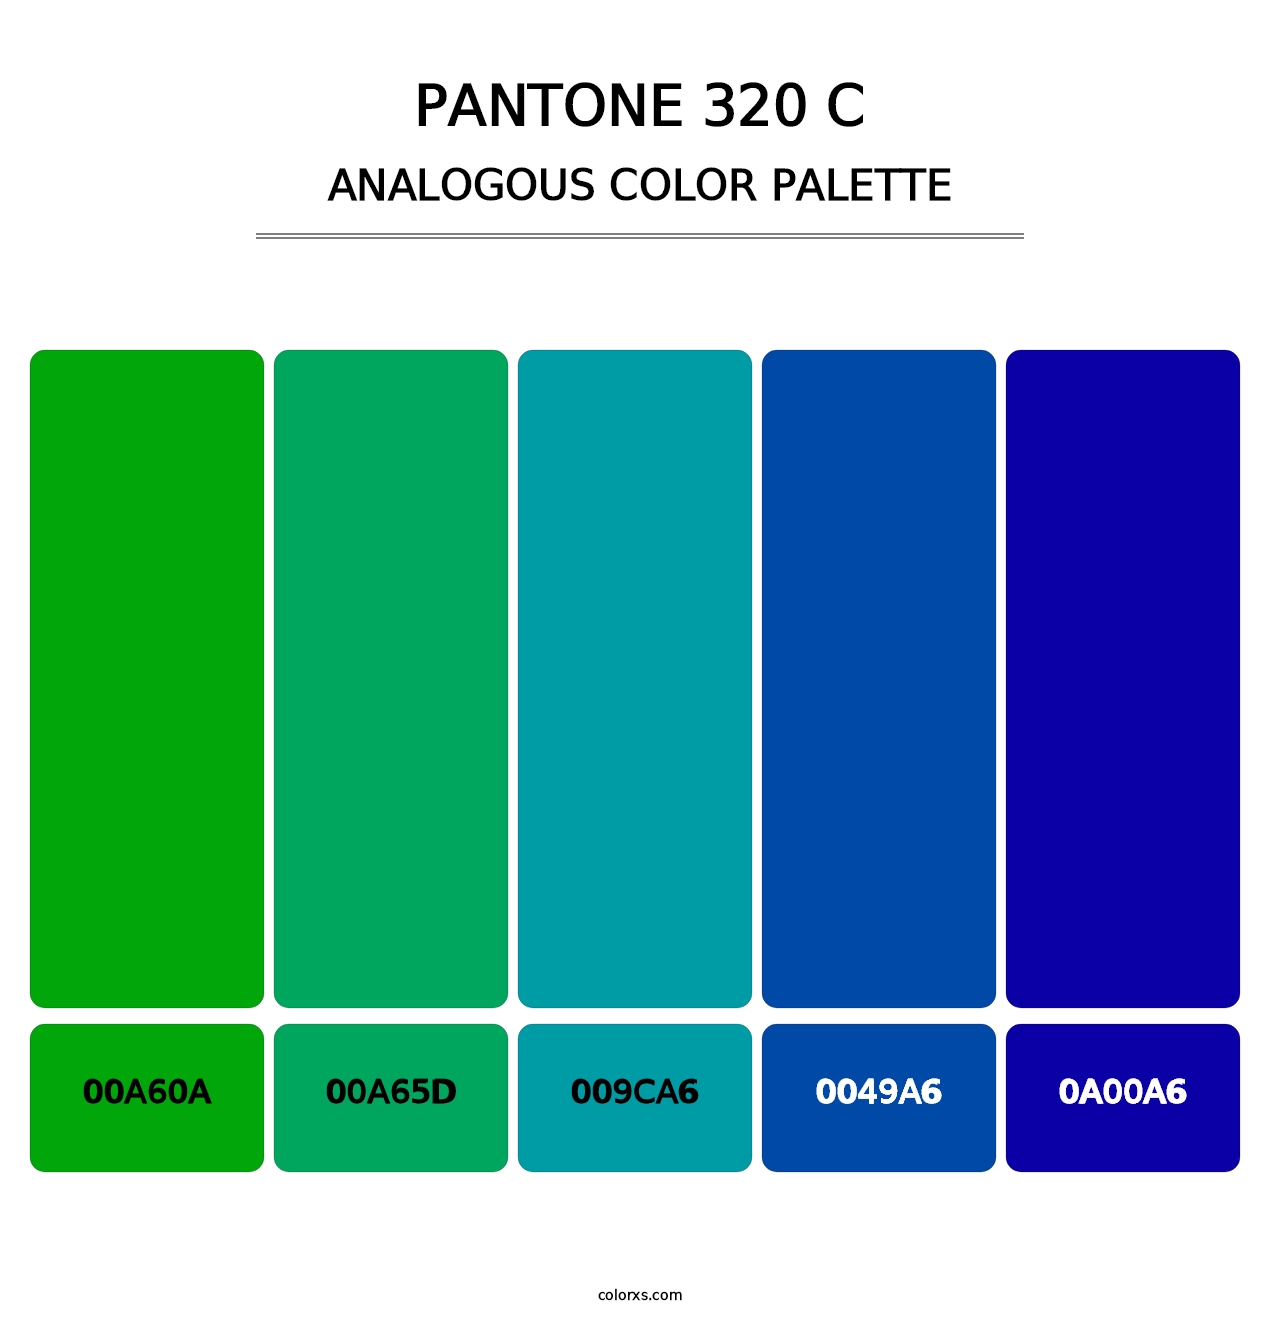 PANTONE 320 C - Analogous Color Palette